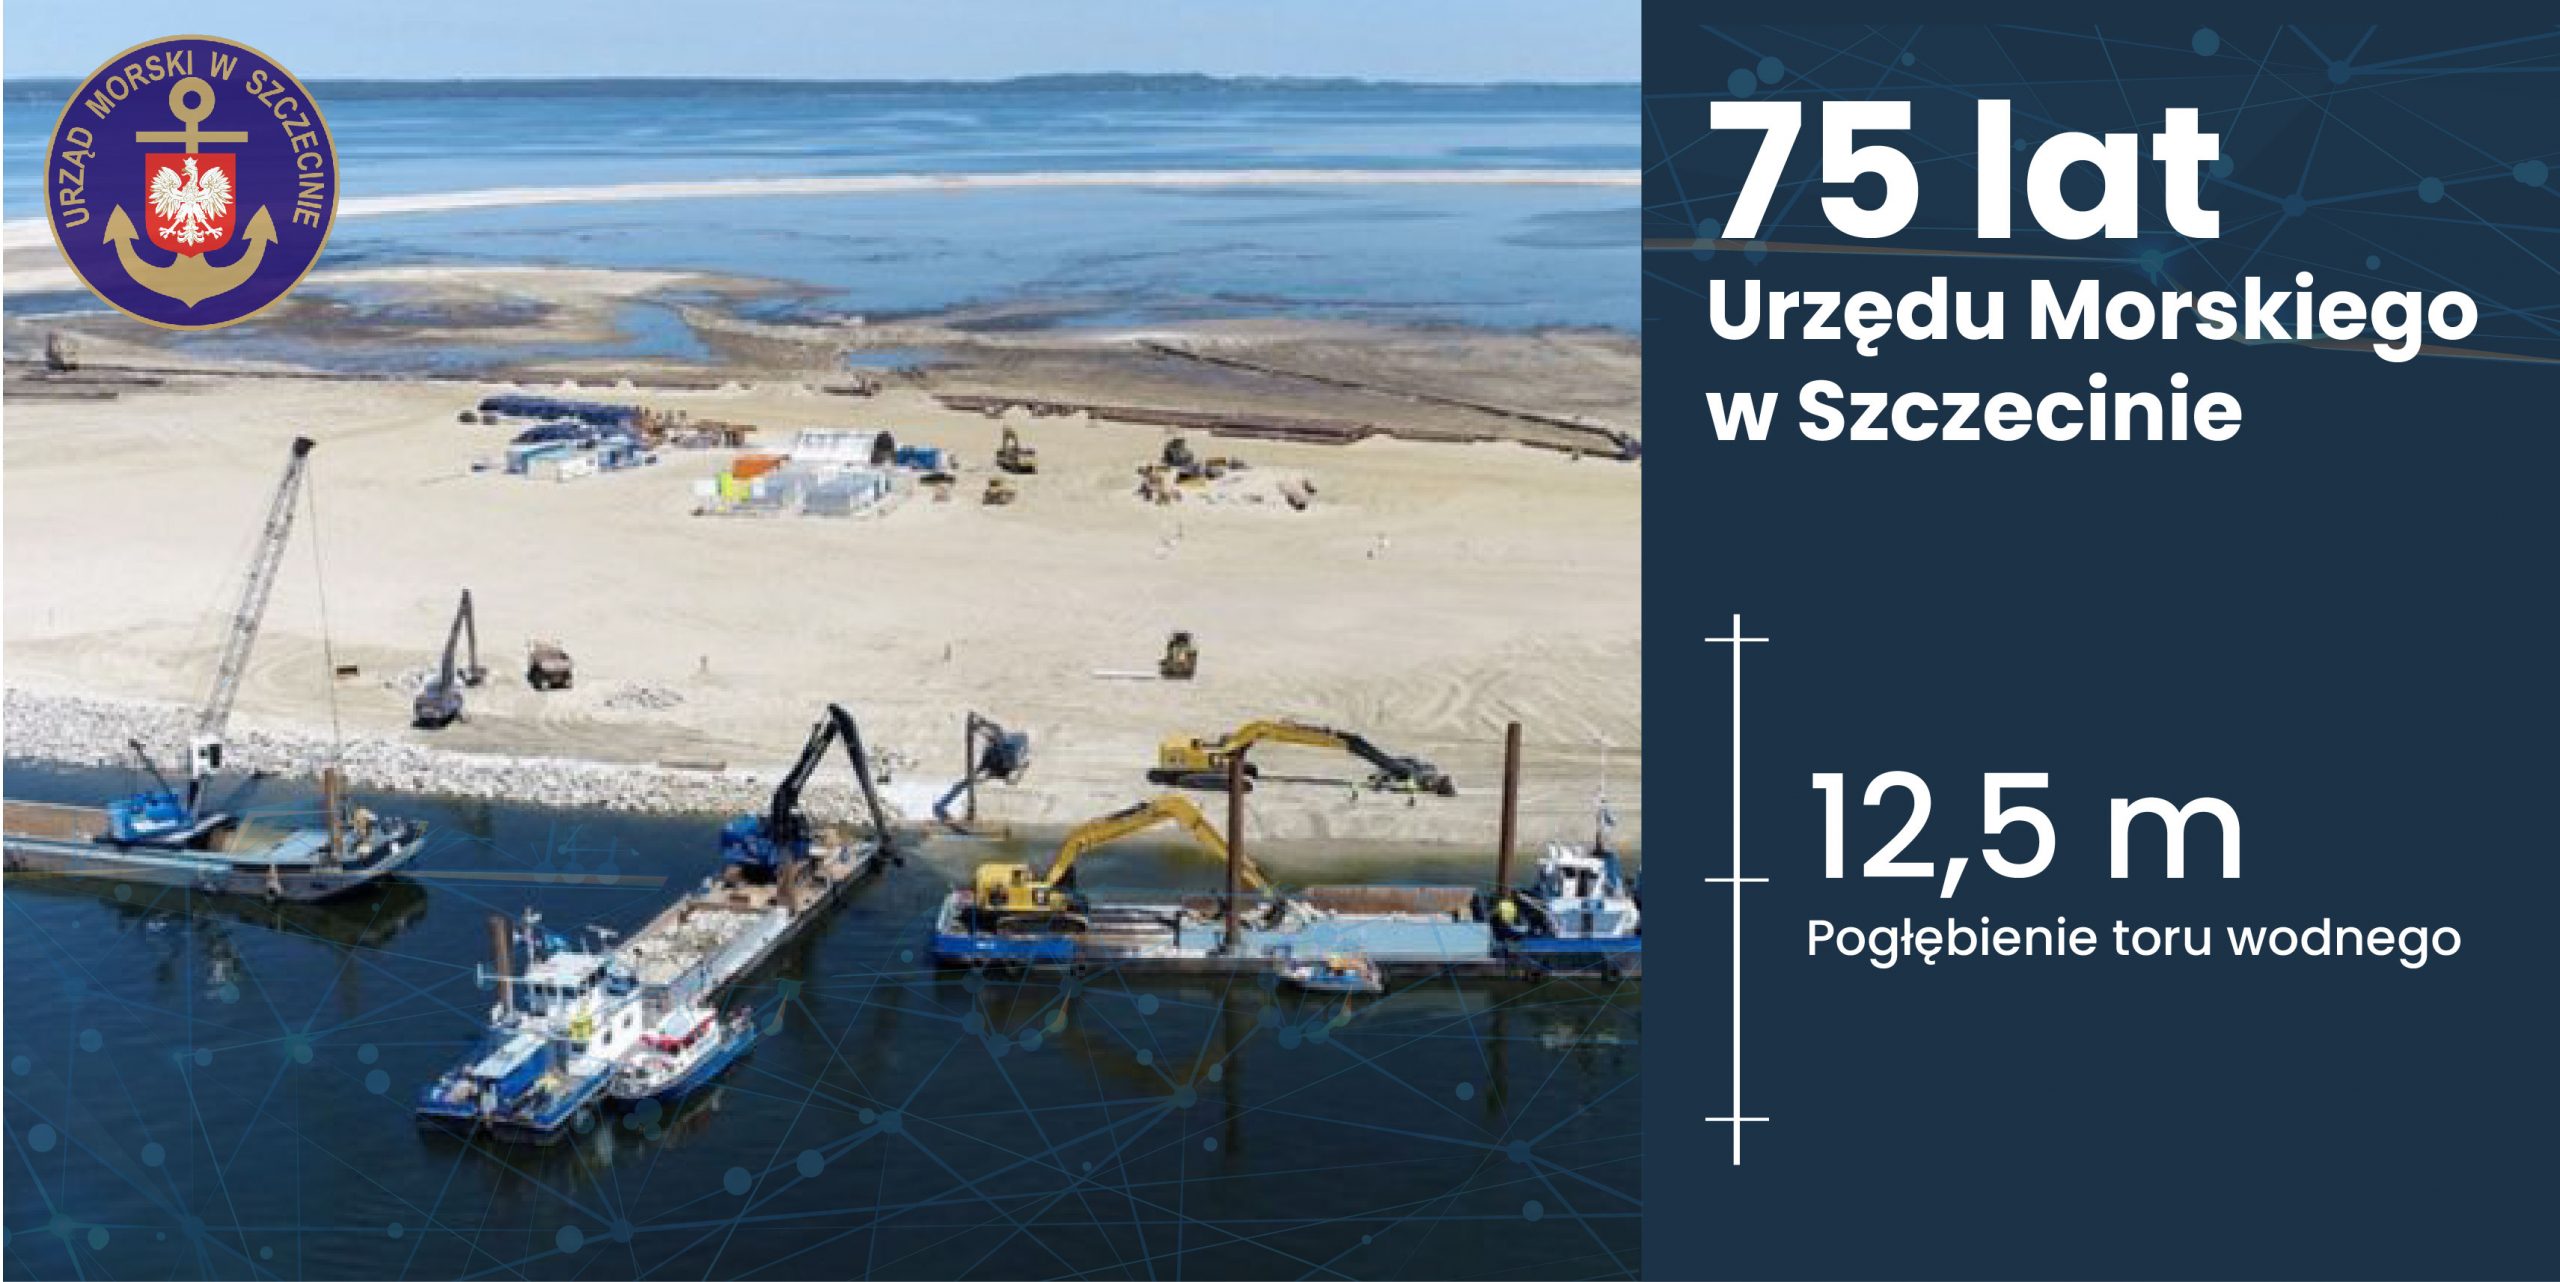 75 lat Urzędu Morskiego w Szczecinie